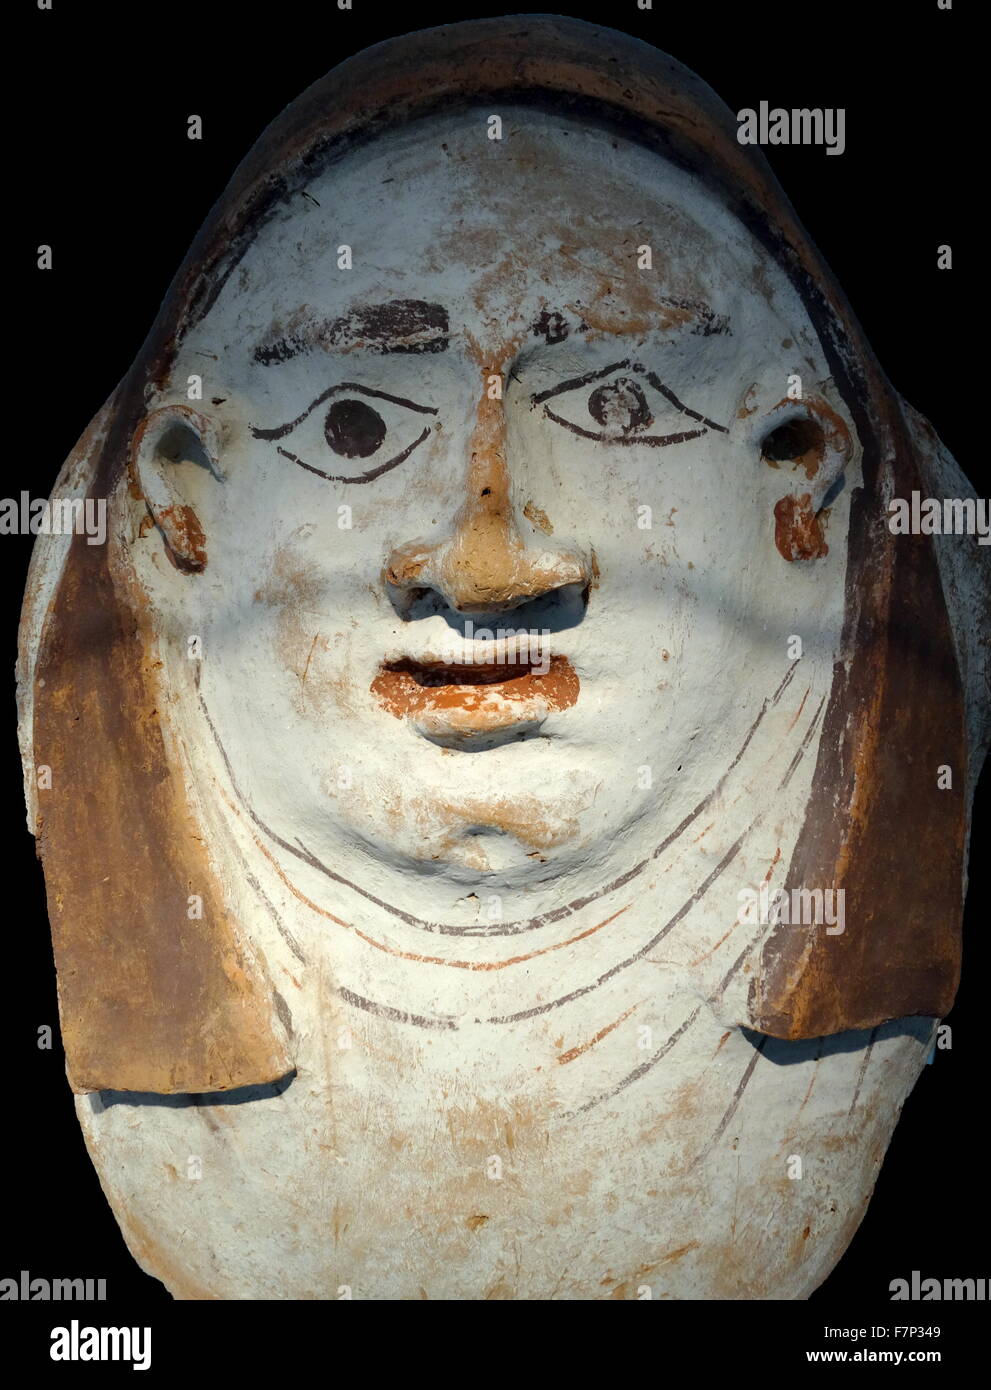 Partie supérieure d'un cercueil égyptien couvercle. La pierre calcaire. 26e dynastie (664-525 avant J.-C.). l'utilisation de cercueils anthropoïde est devenue très répandue. Ce fragment montre la partie correspondant à la face de la personne décédée Banque D'Images